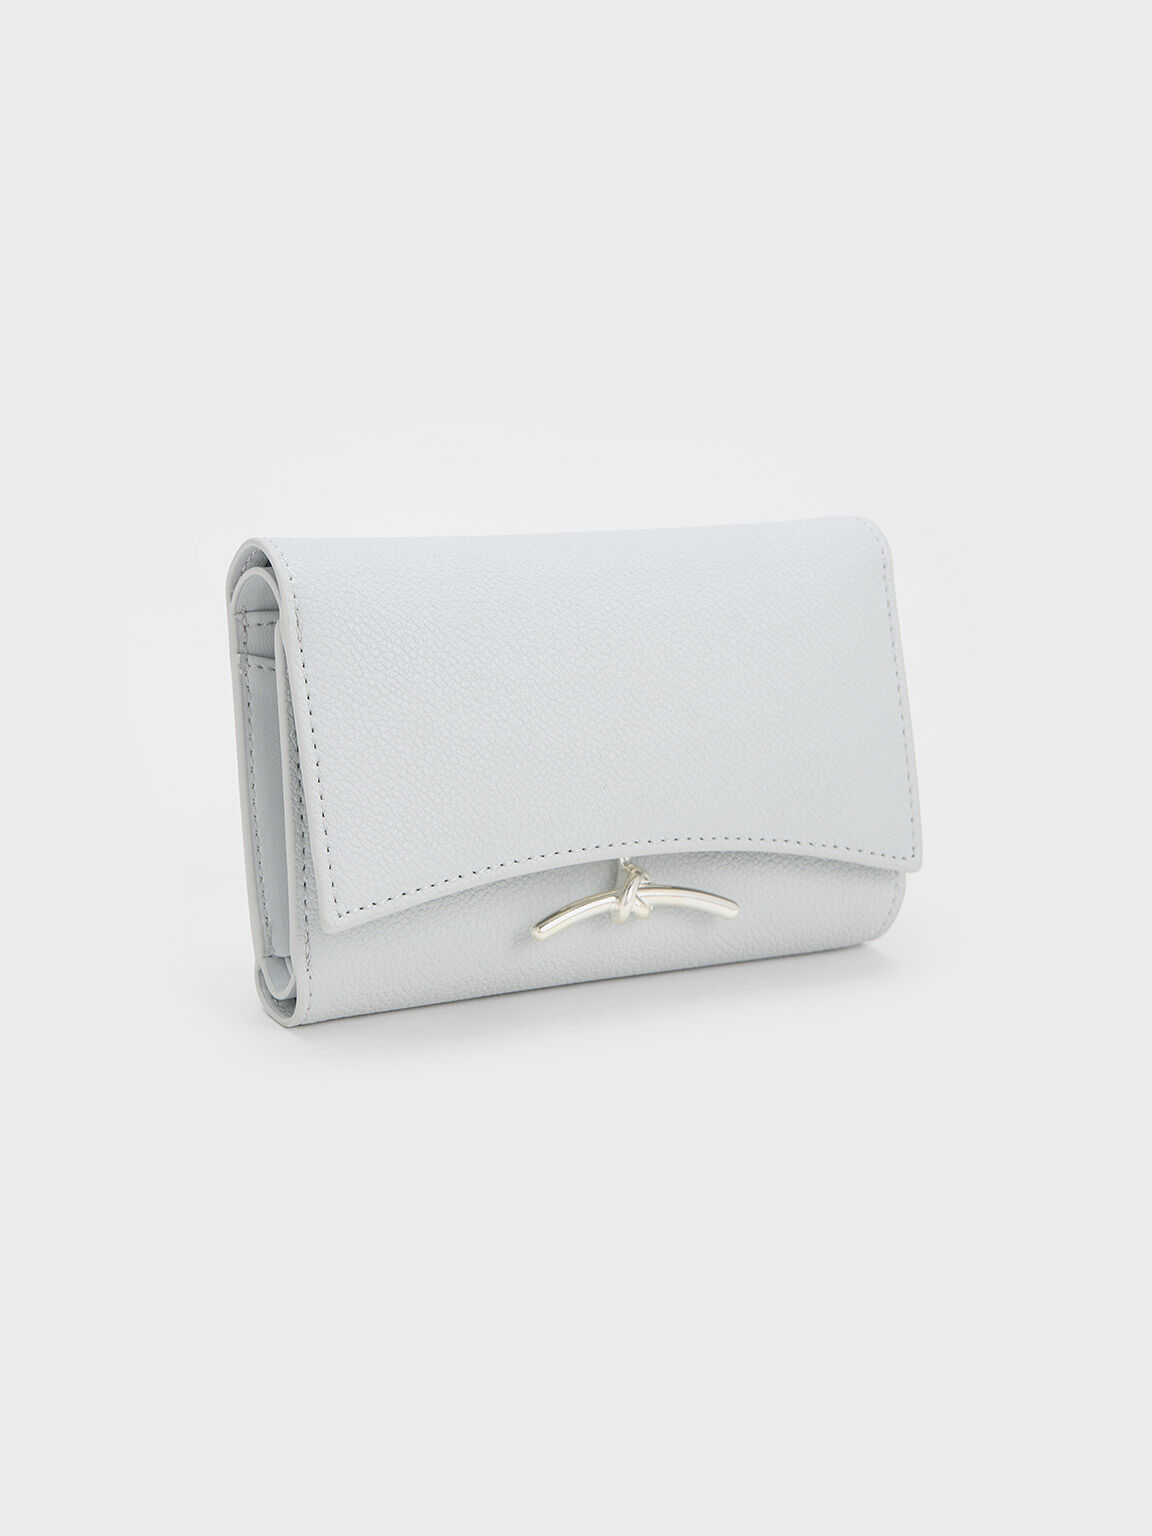 Huxley Metallic-Accent Front Flap Wallet, Light Grey, hi-res